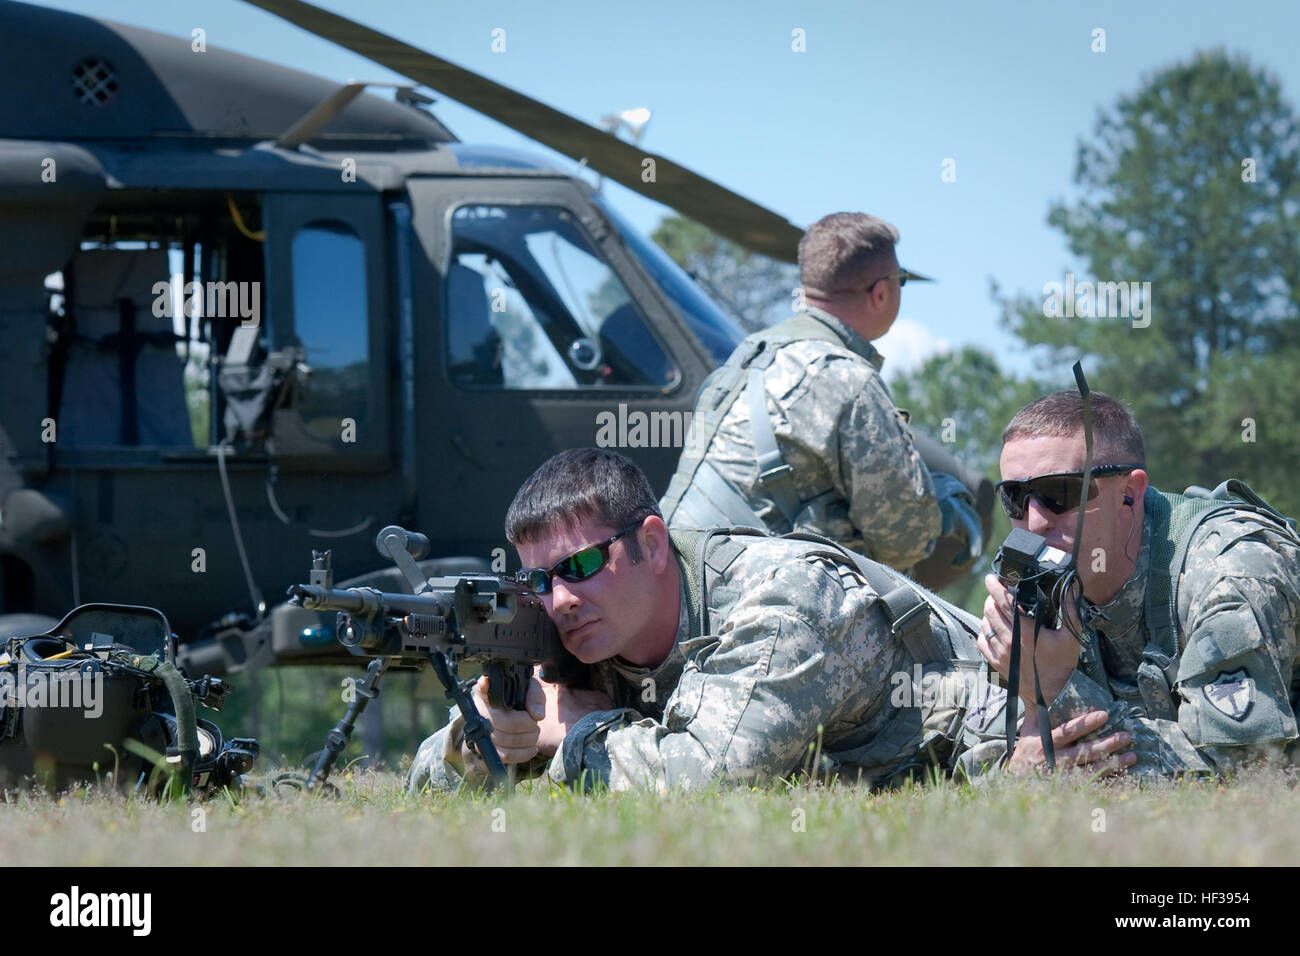 Le Sgt. Une entreprise de peintre Brandon, 1-111ème Bataillon de soutien de l'aviation générale, en Caroline du Sud, de la Garde nationale de l'armée utilise un M240 pour aider à établir un périmètre de défense autour de l'armée américaine un UH-60 Black Hawk alors que l'Adjudant Joshua O'Handley appelle à une évacuation sanitaire dans le cadre d'une récupération du personnel et de l'écrasement d'un aéronef de l'entraînement à l'McCrady Centre de formation, Eastover, S.C., le 3 mai 2015. La formation a permis aux équipages de construire l'expérience et de la confiance dans les procédures de récupération du personnel dans le cadre de l'exécution des tâches de l'armée pour assurer le guerrier bataillon est préparé pour s Banque D'Images